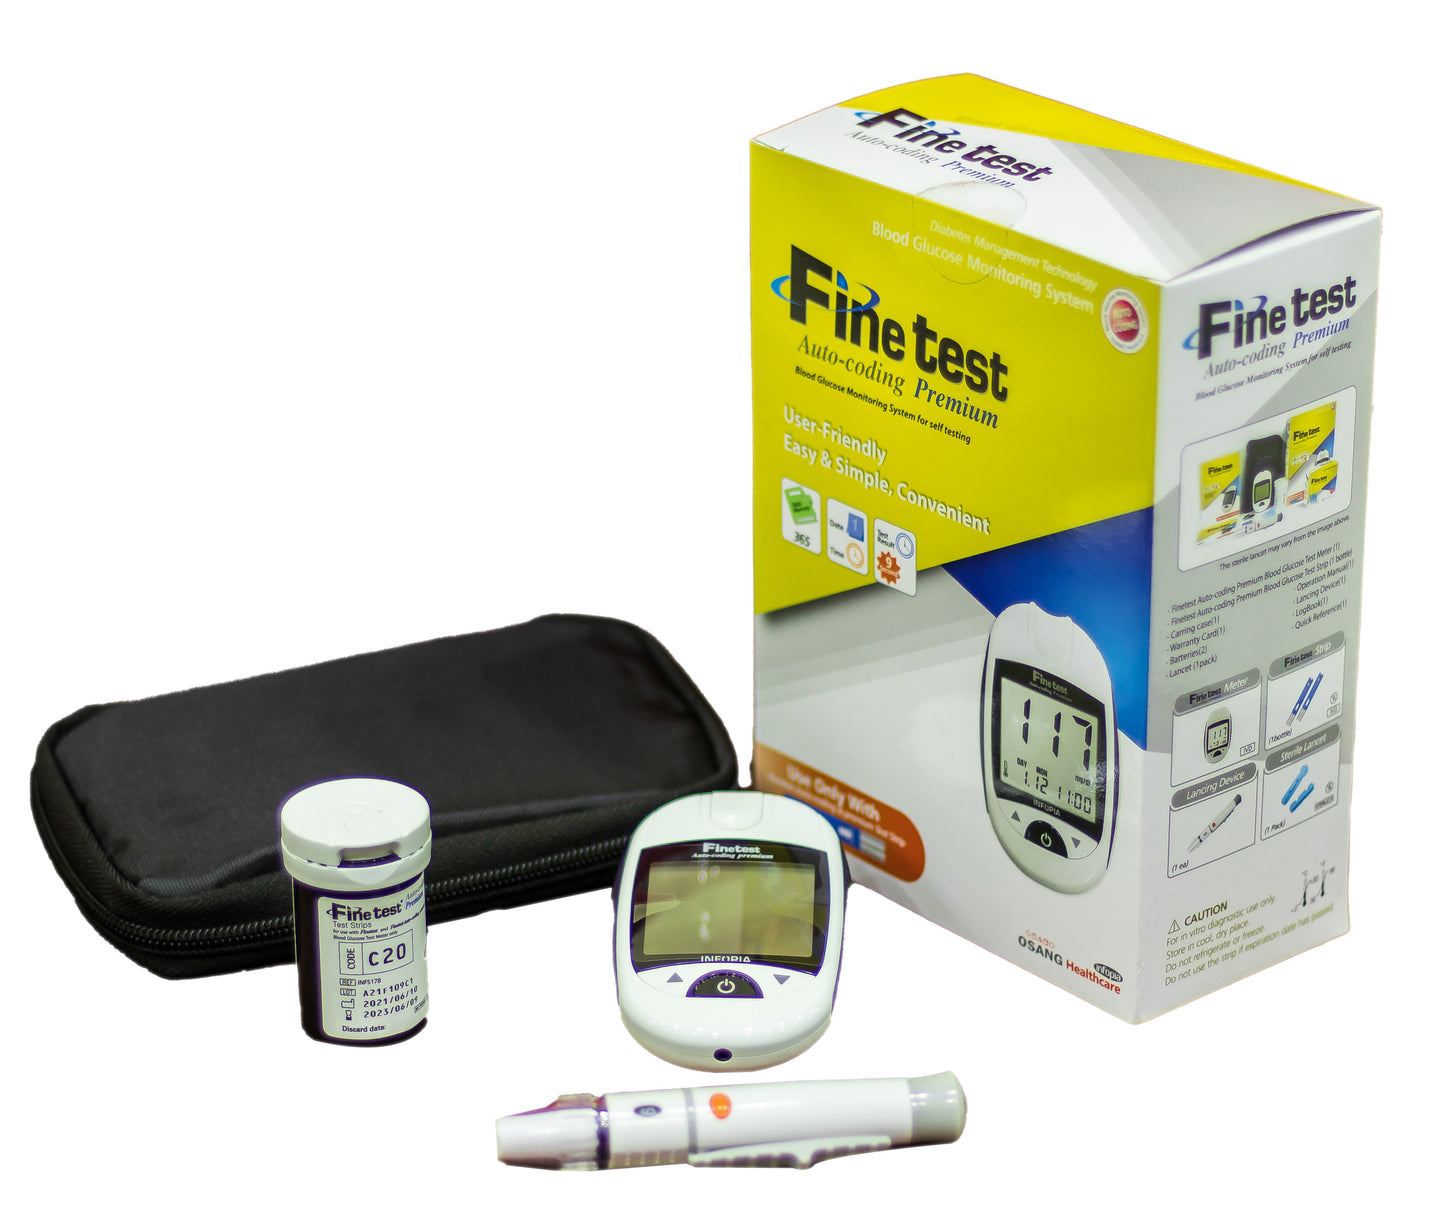 جهاز لقياس نسبة السكر في الدم (فاين تيست) بالإضافة إلى 25 شريط